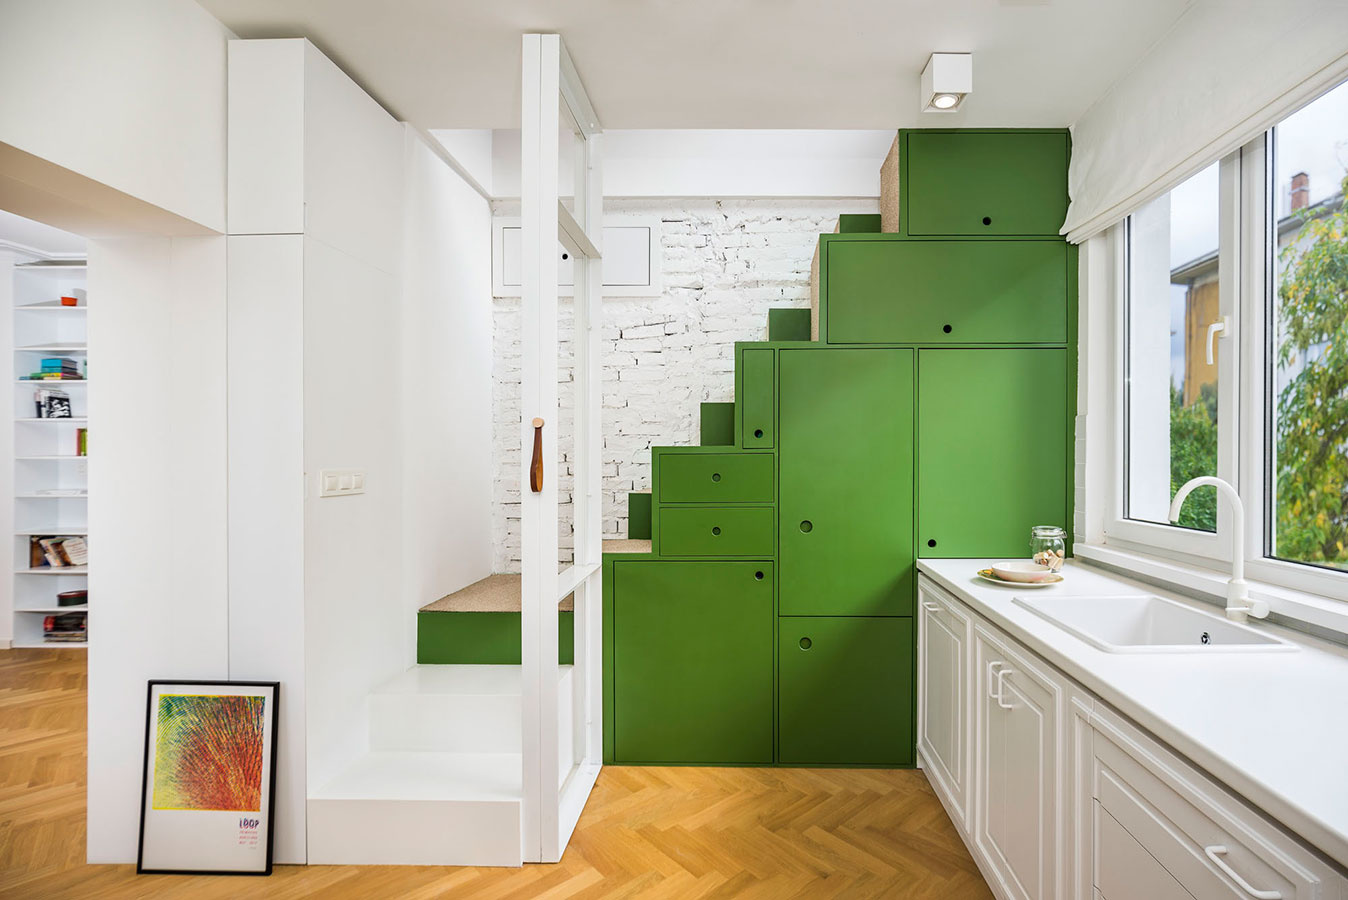 V starom podkrovnom priestore vytvorili byt plný zaujímavých interiérových riešení